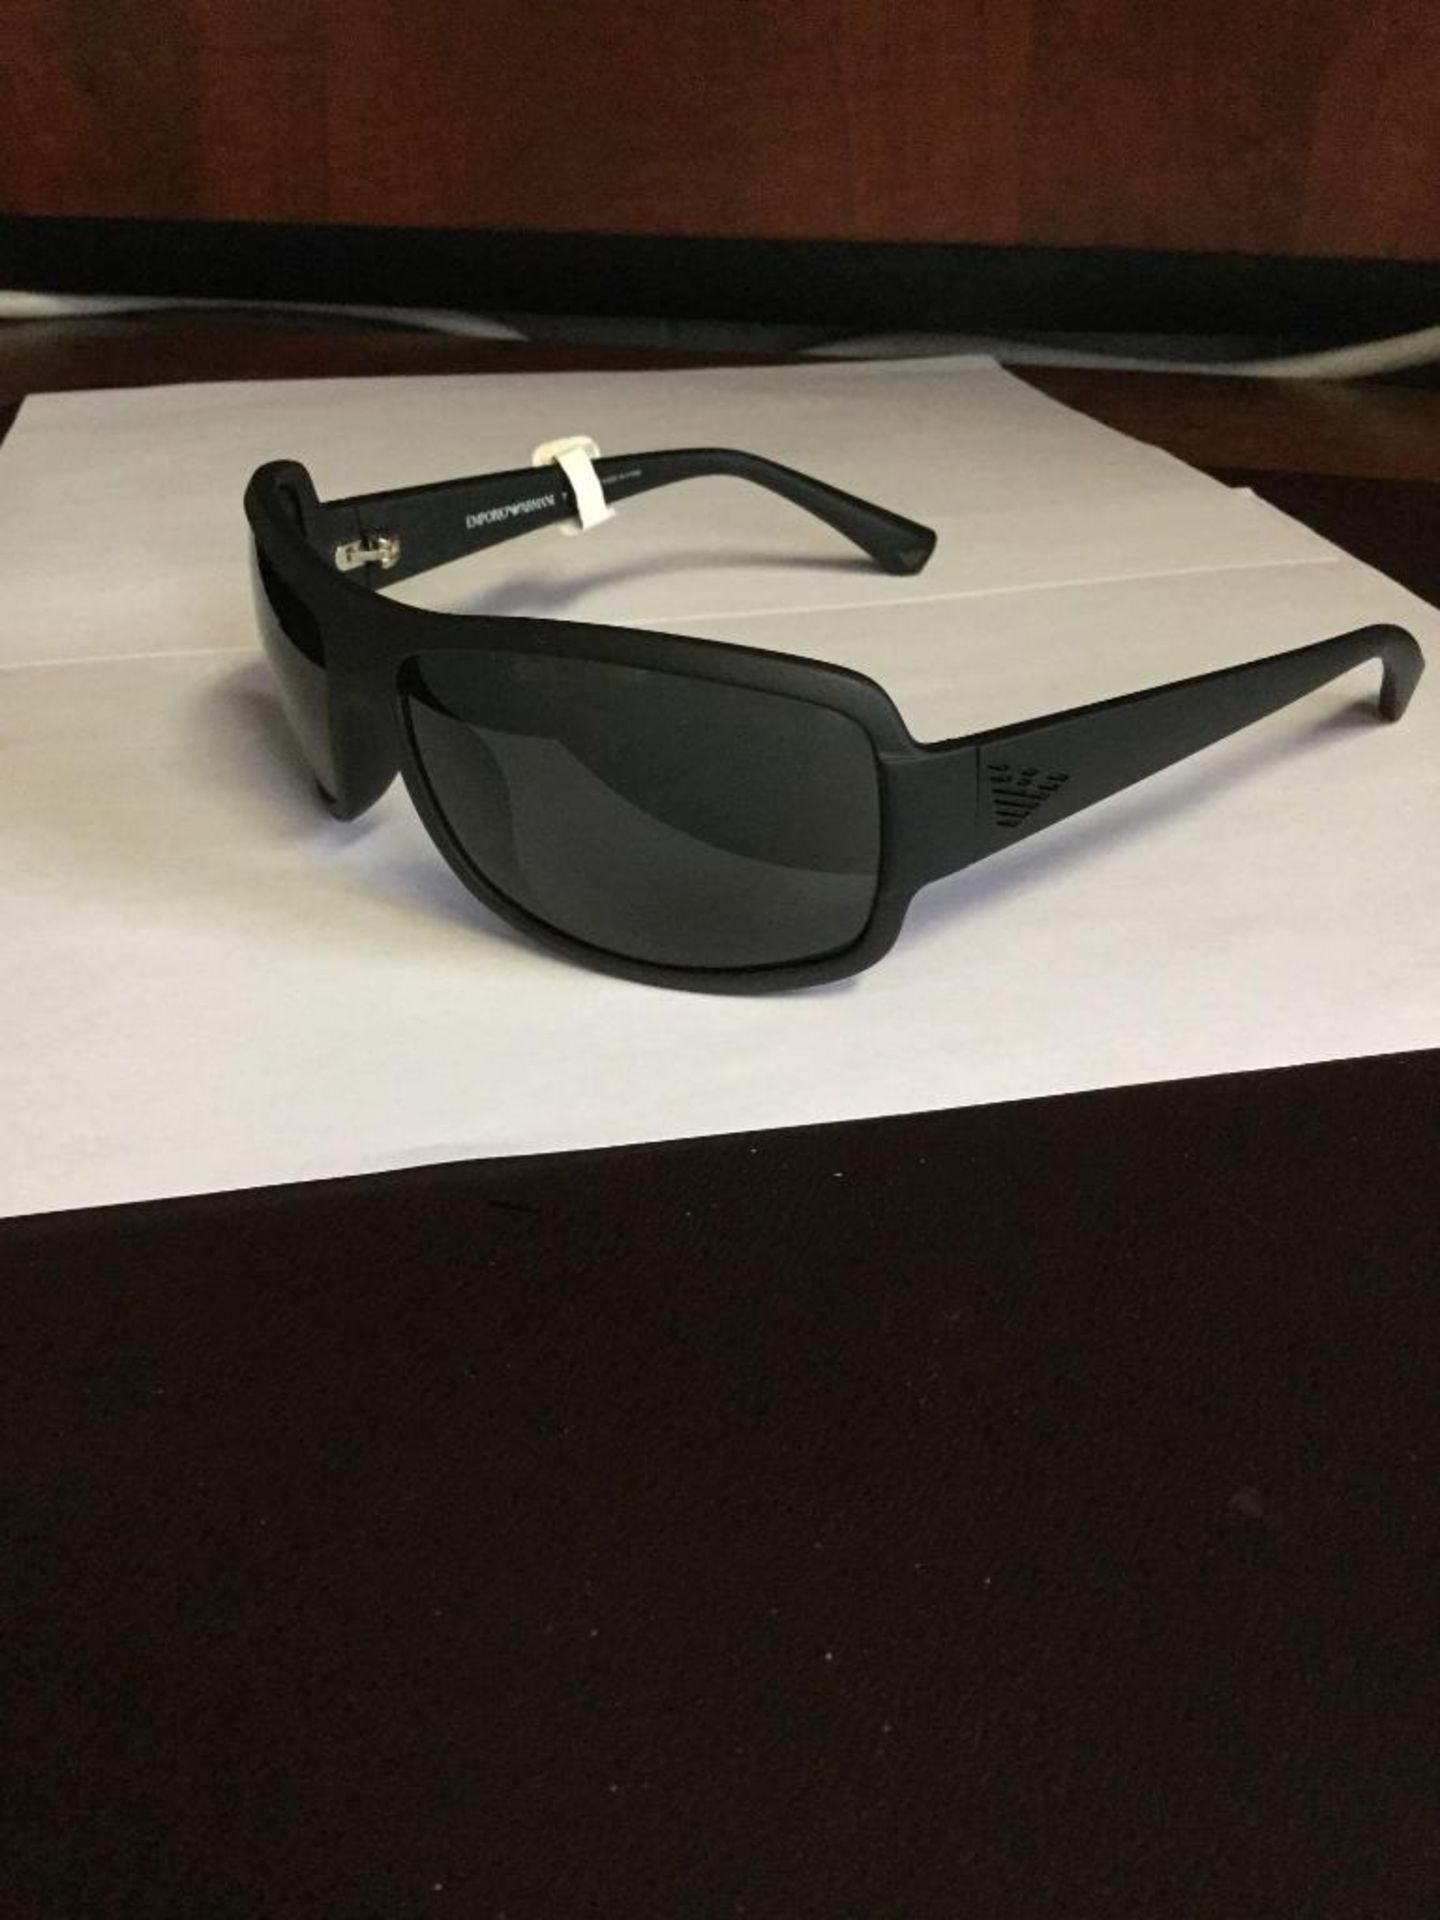 Emporio Armani Sunglasses - Value $150 - Image 2 of 2